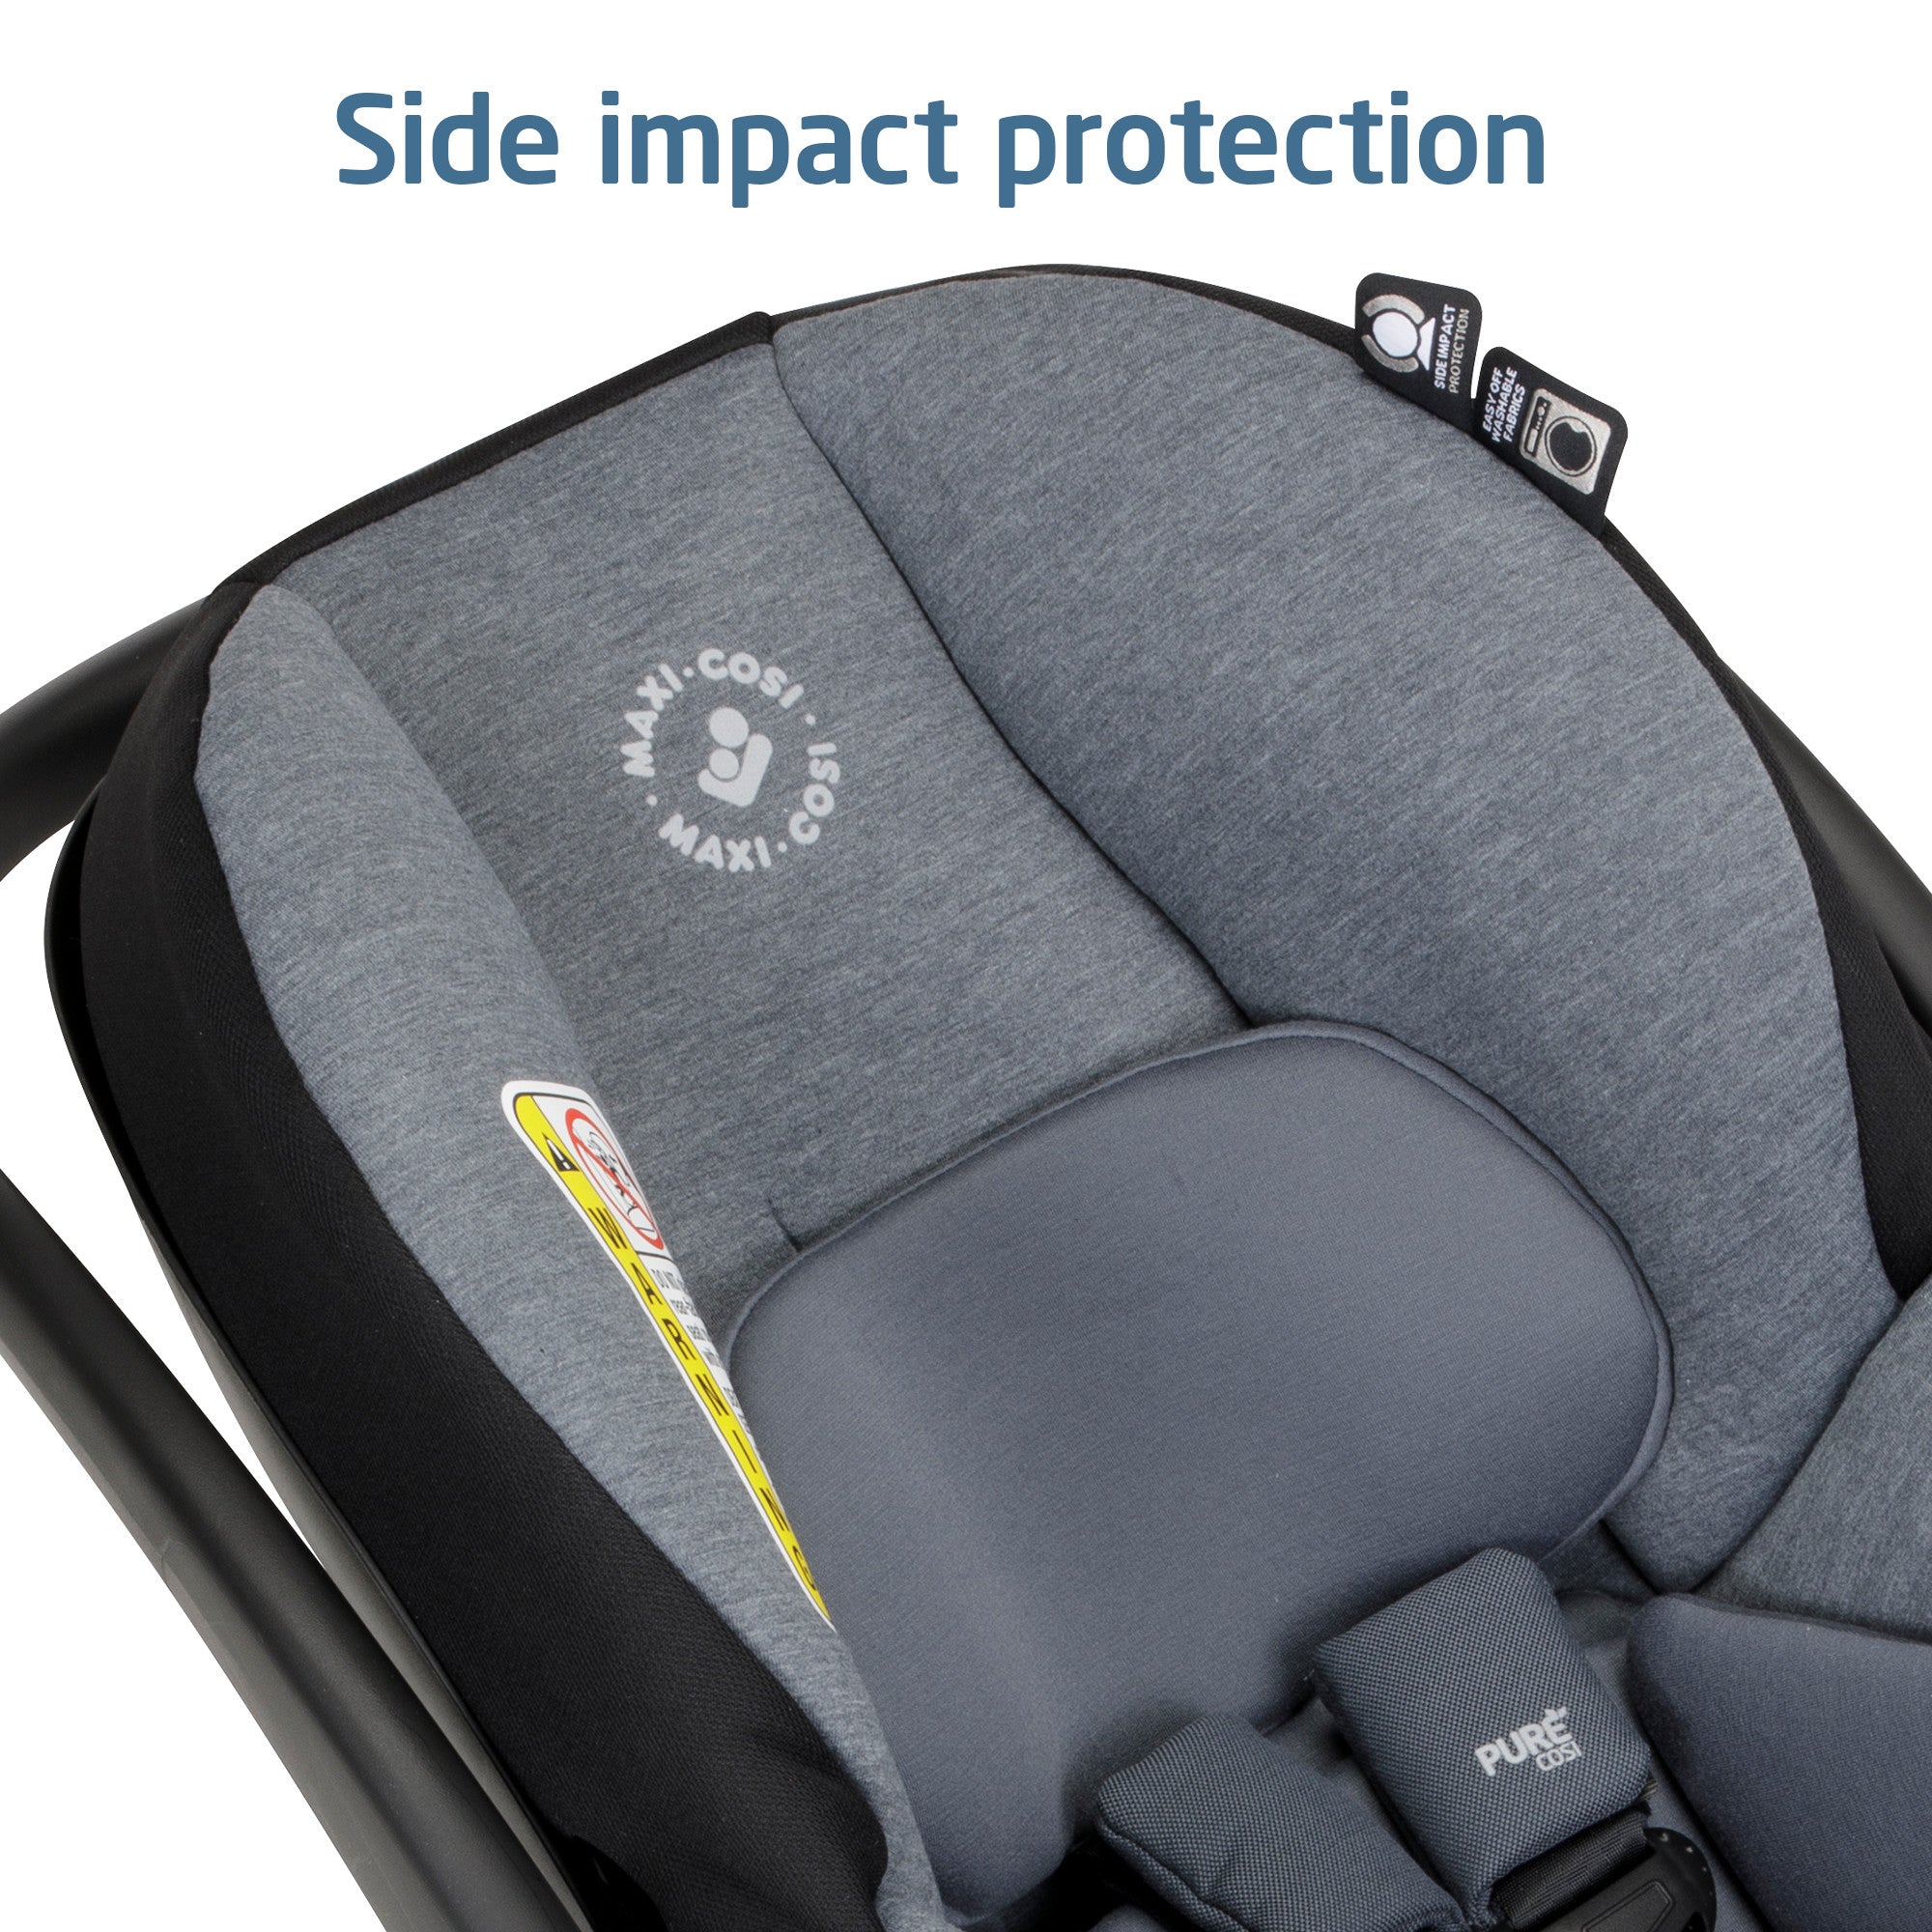 Maxi-Cosi Mico Luxe Infant Car Seat - Stone Glow